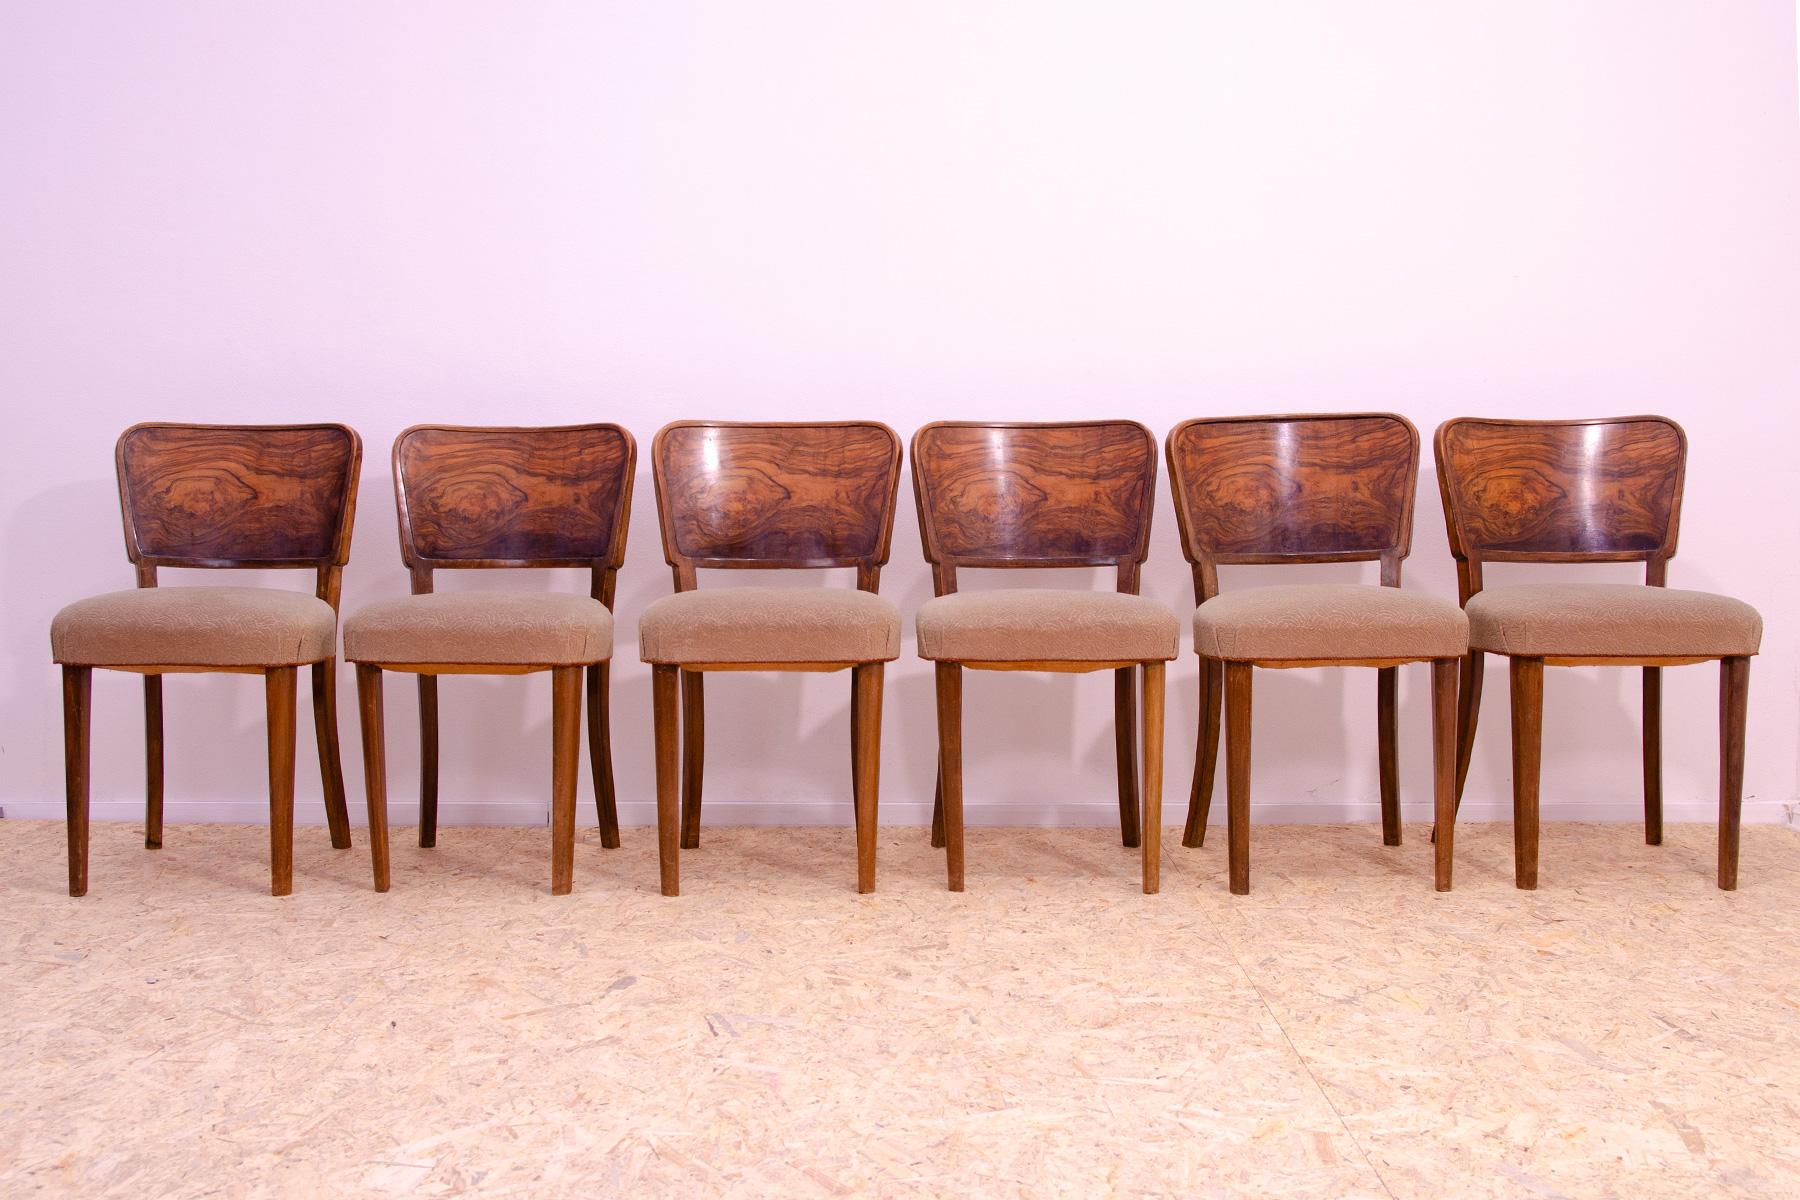 Ces chaises de salle à manger ont été fabriquées dans le style ART DECO dans l'ancienne Tchécoslovaquie dans les années 1930.

Fabriqué en noyer. En bon état Vintage, montrant des signes d'âge et d'utilisation.

Le prix est pour le lot de 6.

